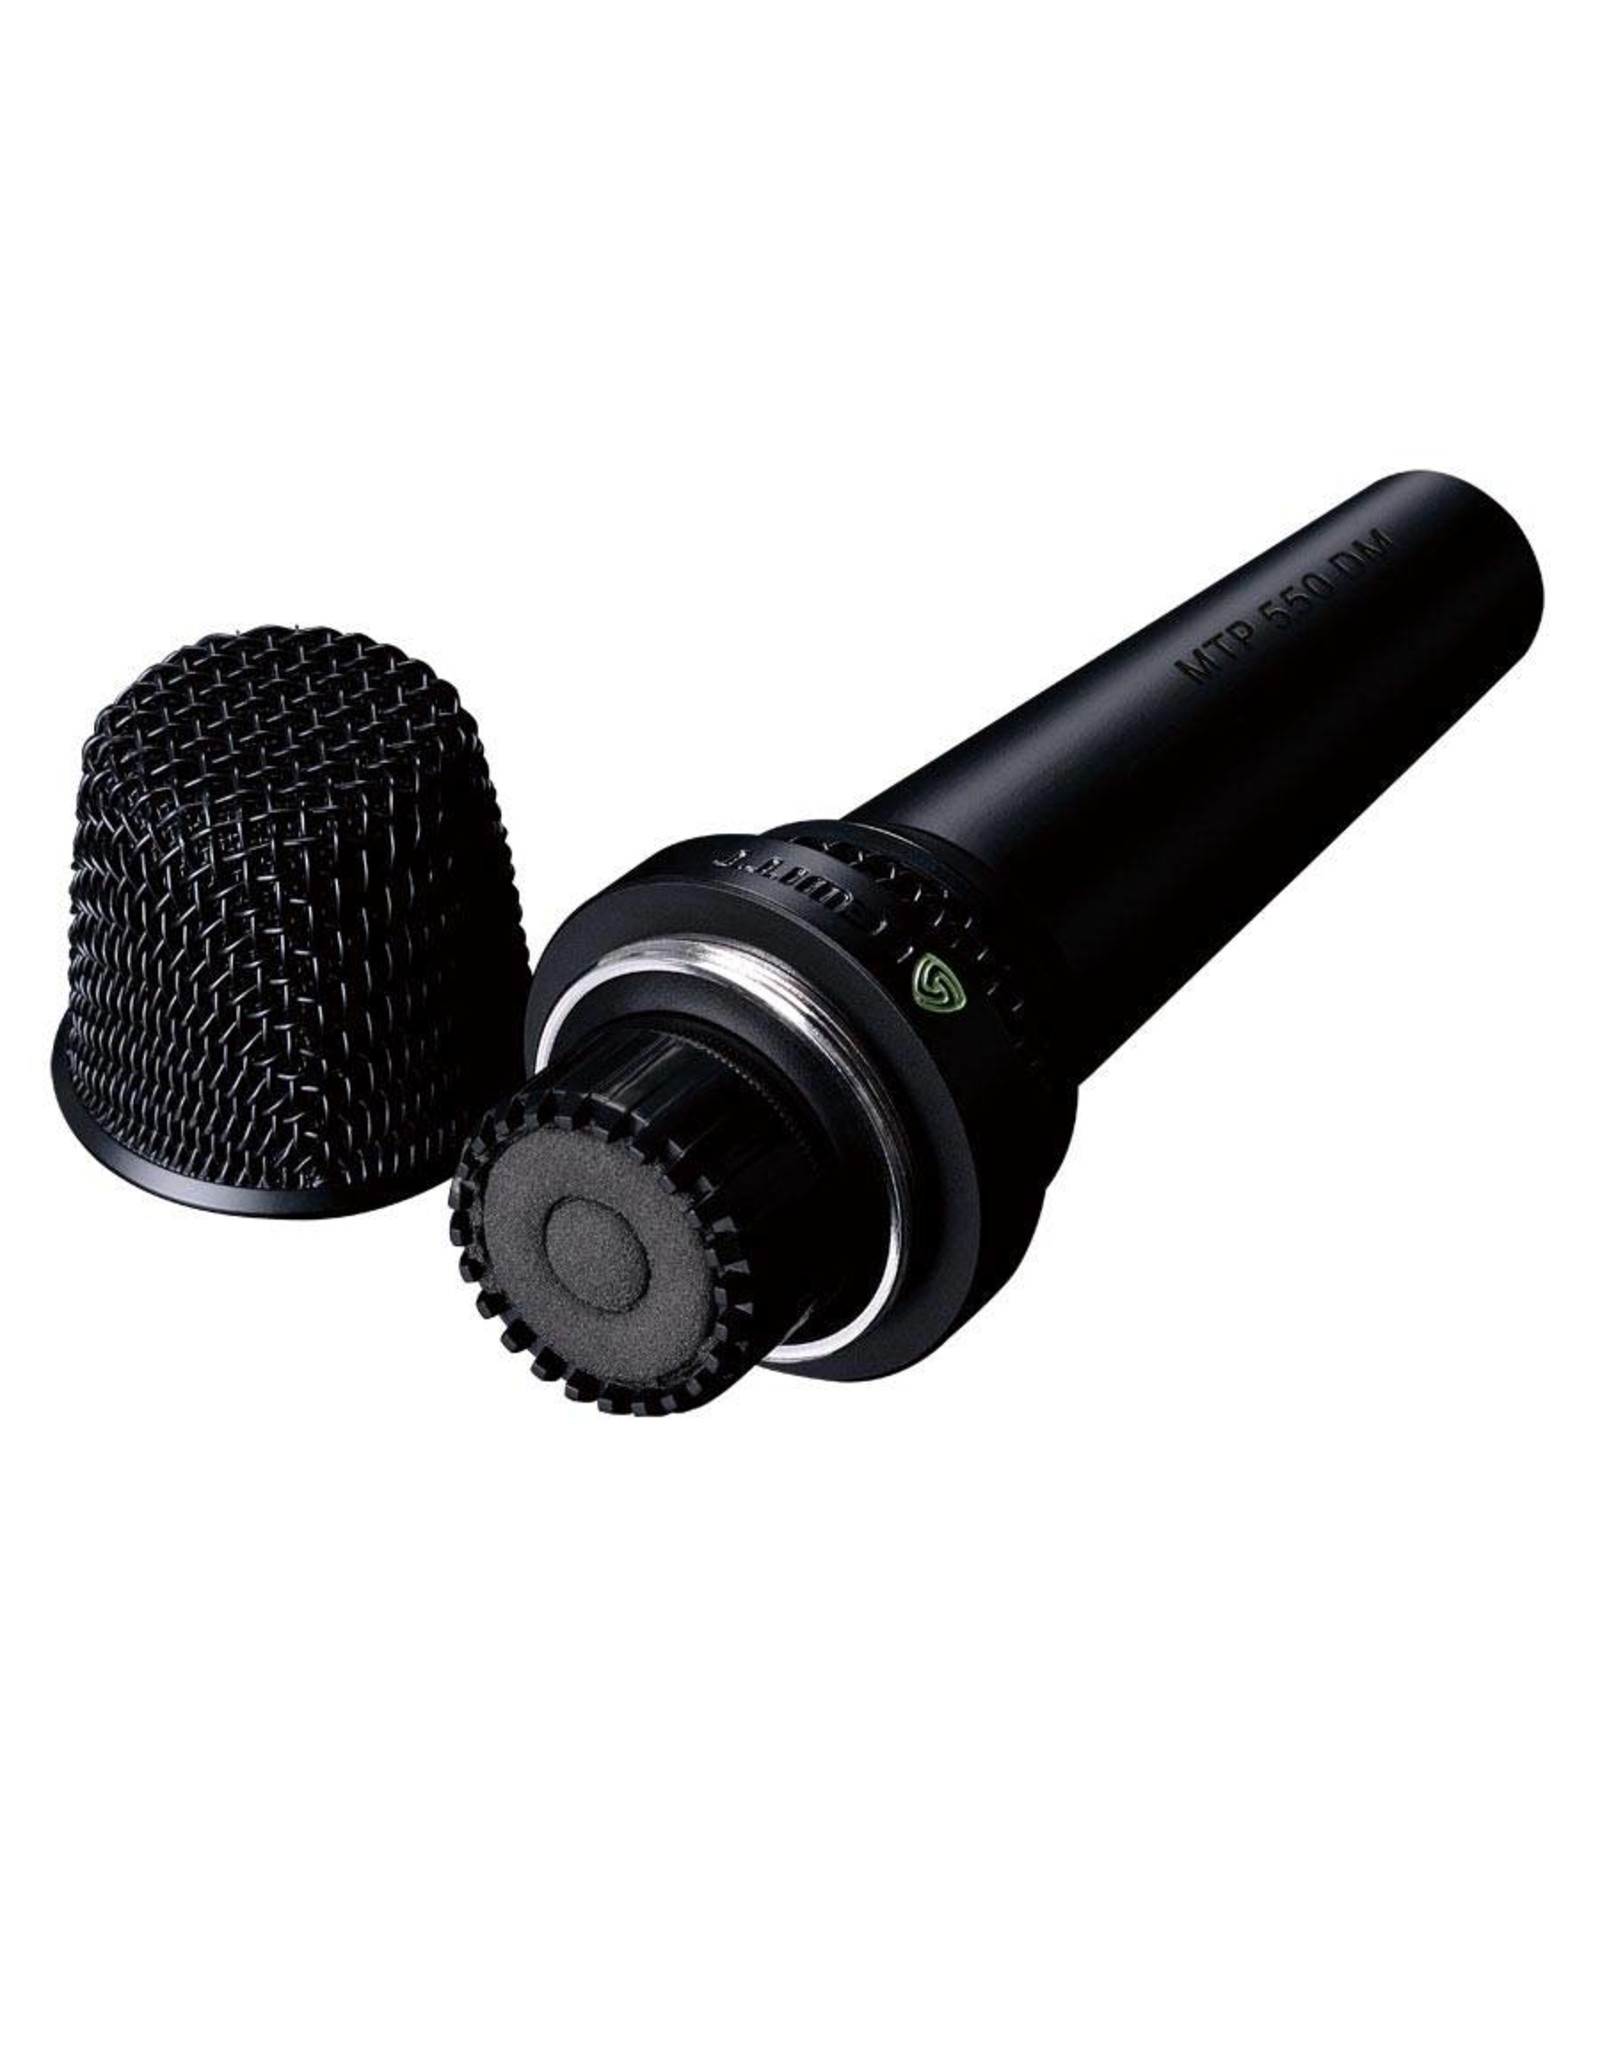 Lewitt MTP550DMS Gesangsmikrofon mit Schalter